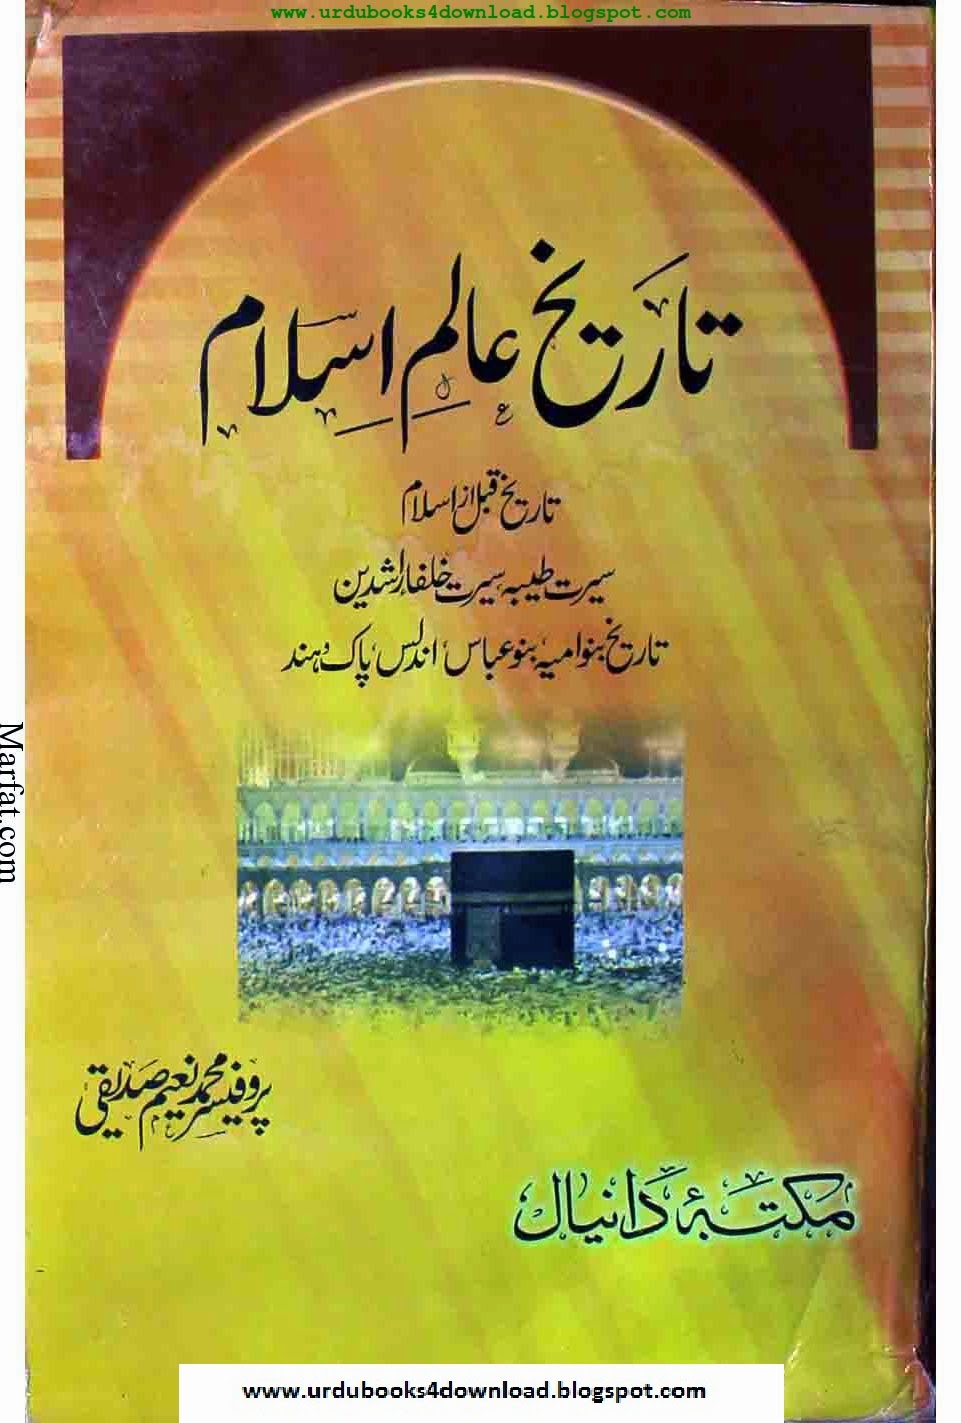 islamic books in urdu download